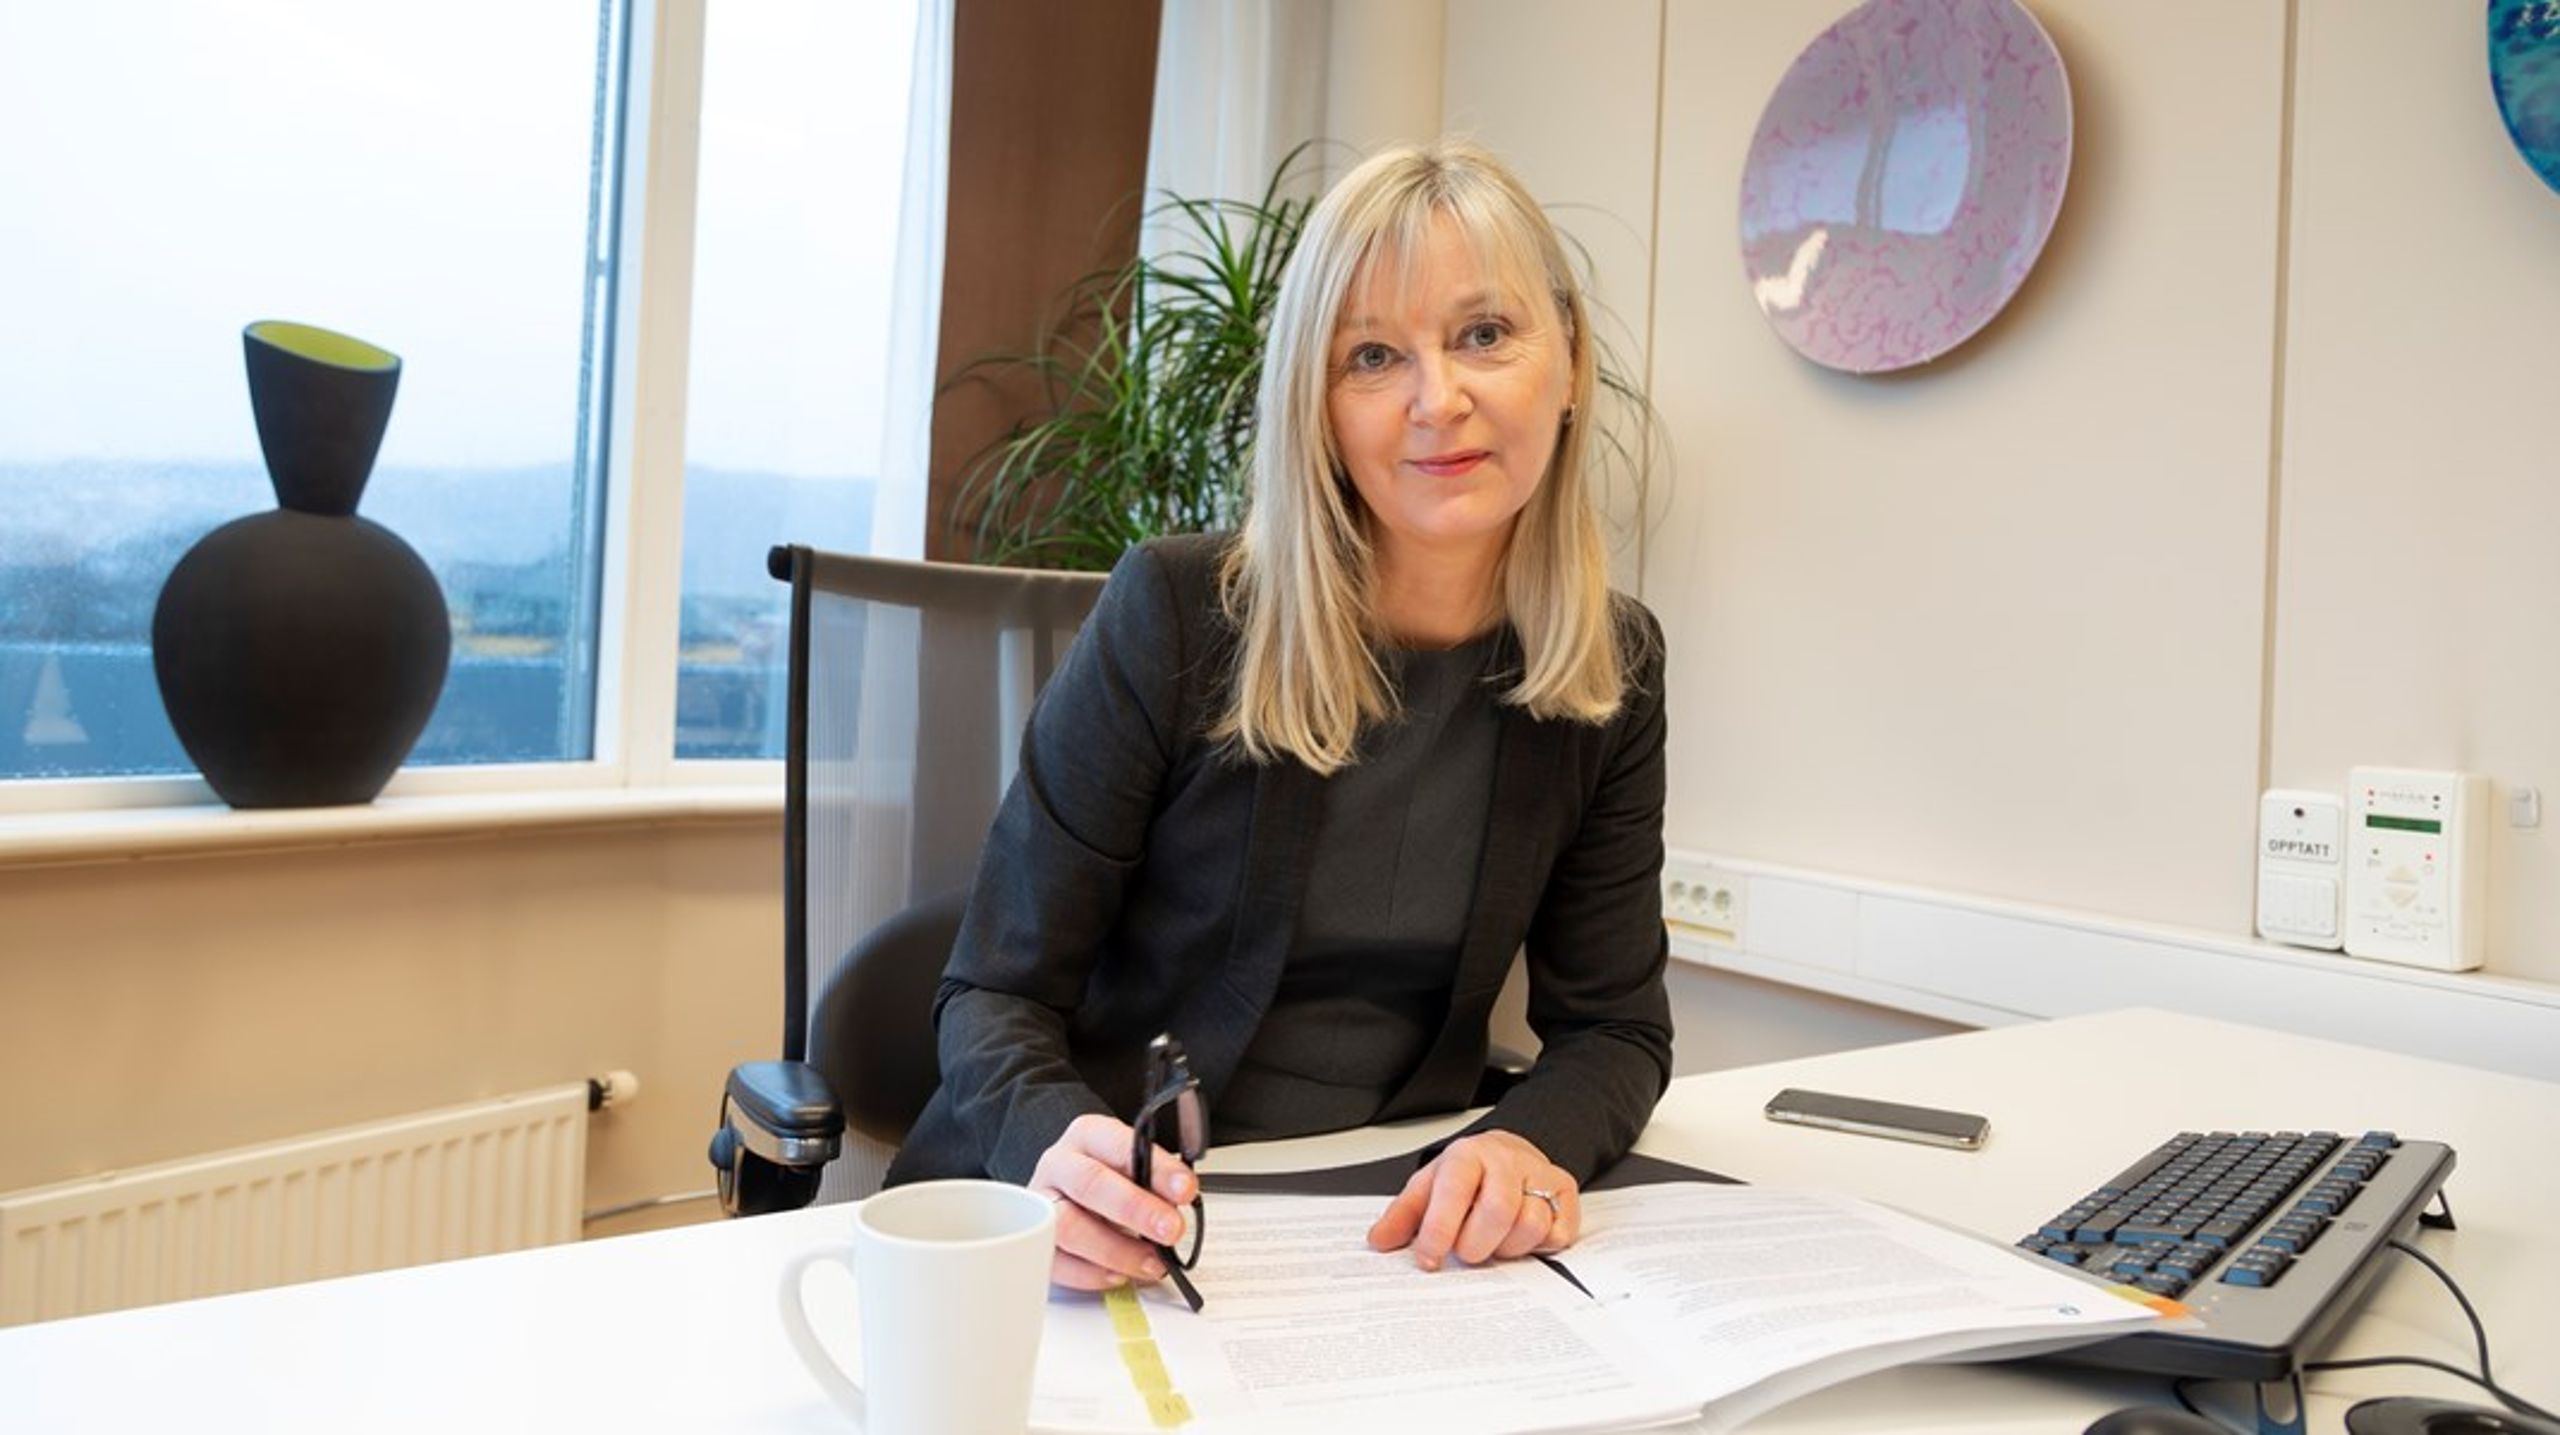 – Undersøkelsen viser et vesentlig forbedringspotensial blant norske virksomheter, sier direktør i Arbeidstilsynet Trude Vollheim.